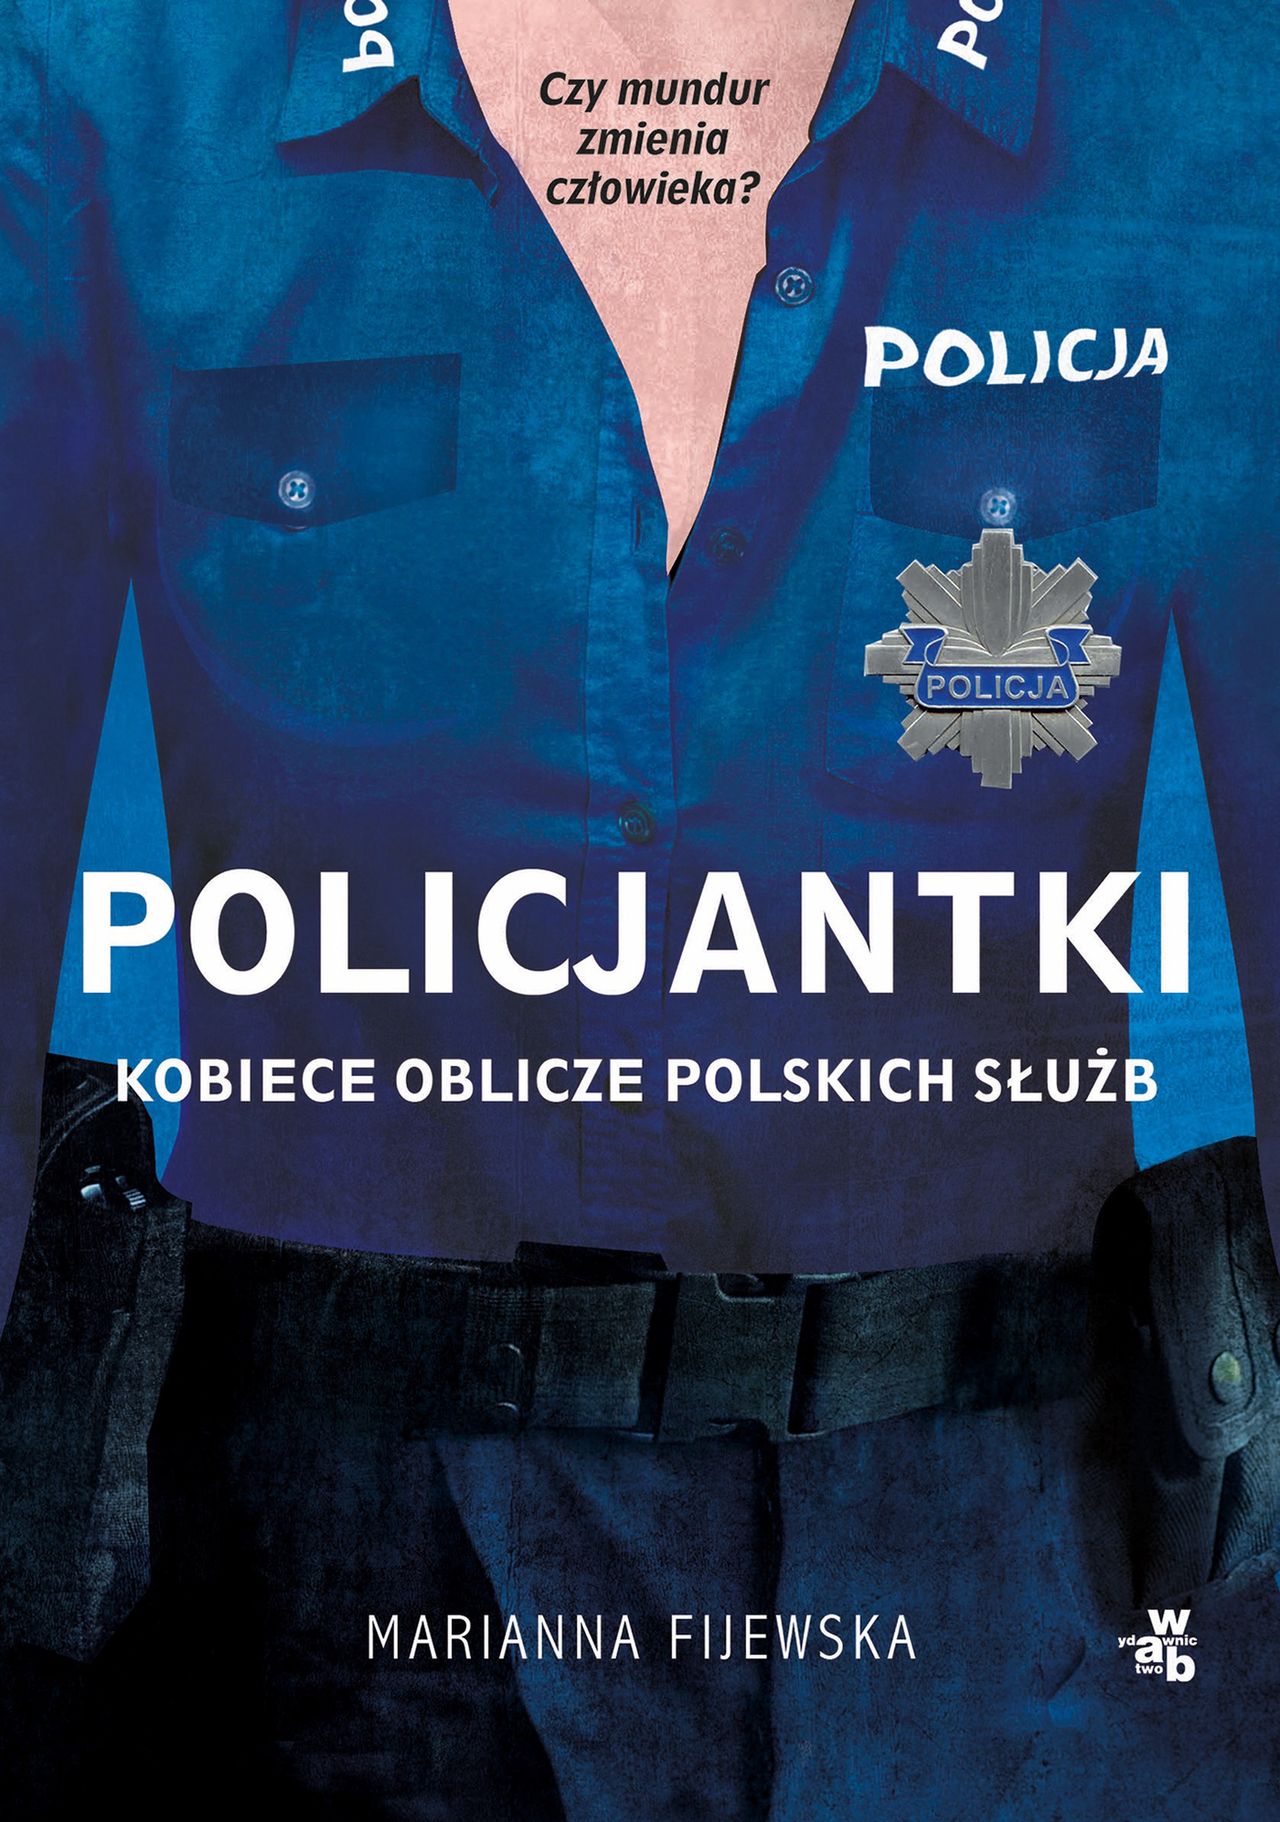 "Policjantki. Kobiece oblicze polskich służb"